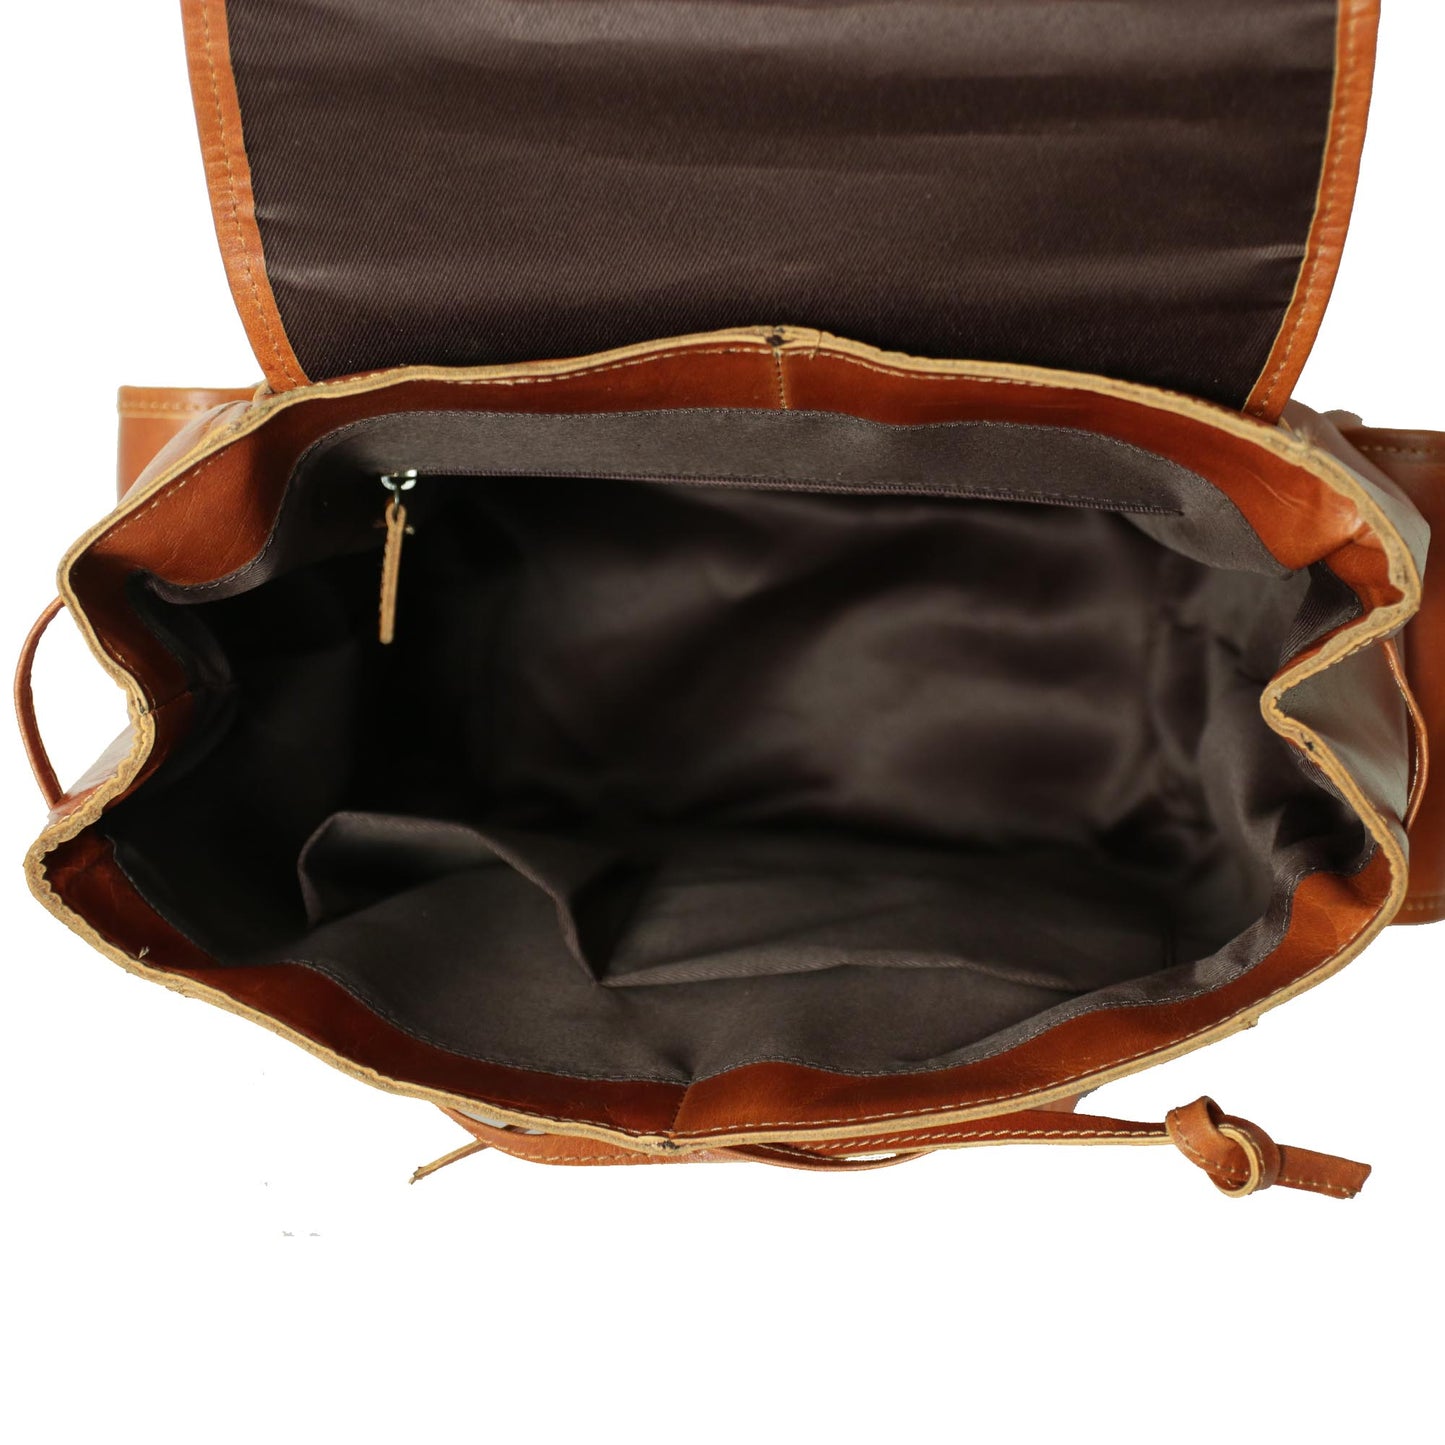 Retro Crazy Horse Leather Men's Backpack Laptop Bag Multi-pocket Schoolbag Men Travel Backpacks , Gift for Him